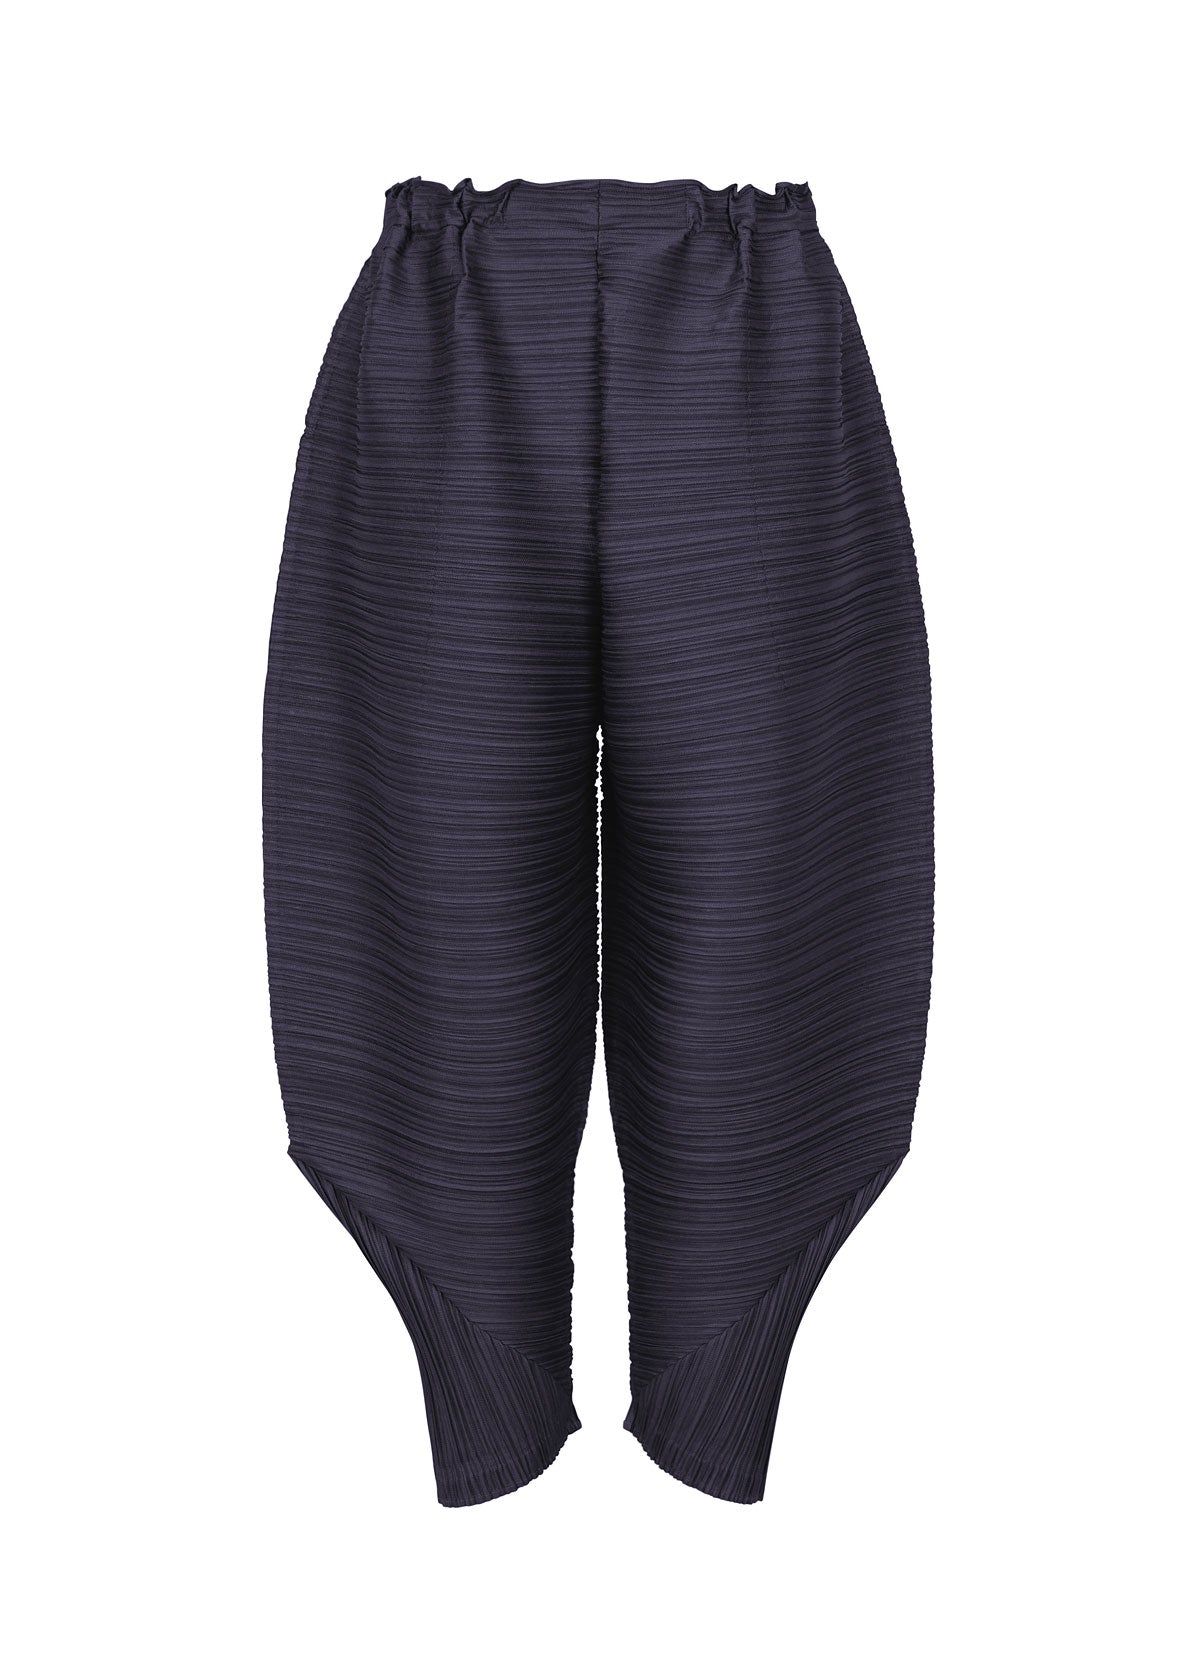 THICKER BOUNCE Trousers Dark Navy | ISSEY MIYAKE ONLINE STORE UK